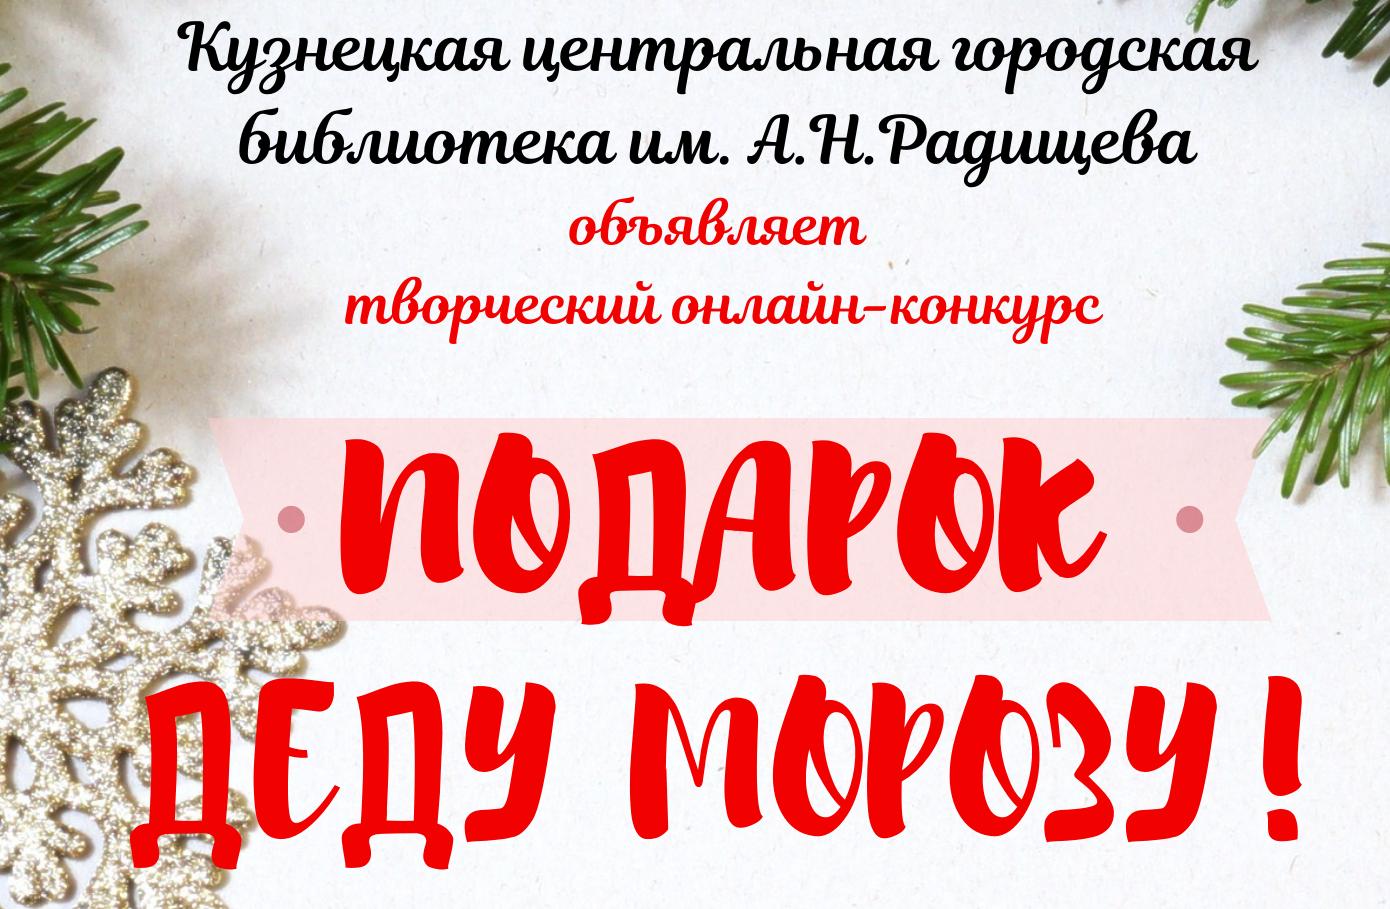 Центральная городская библиотека им. А.Н. Радищева продолжает   семейный творческий конкурс «#Подарок_Деду_Морозу_онл@йн»